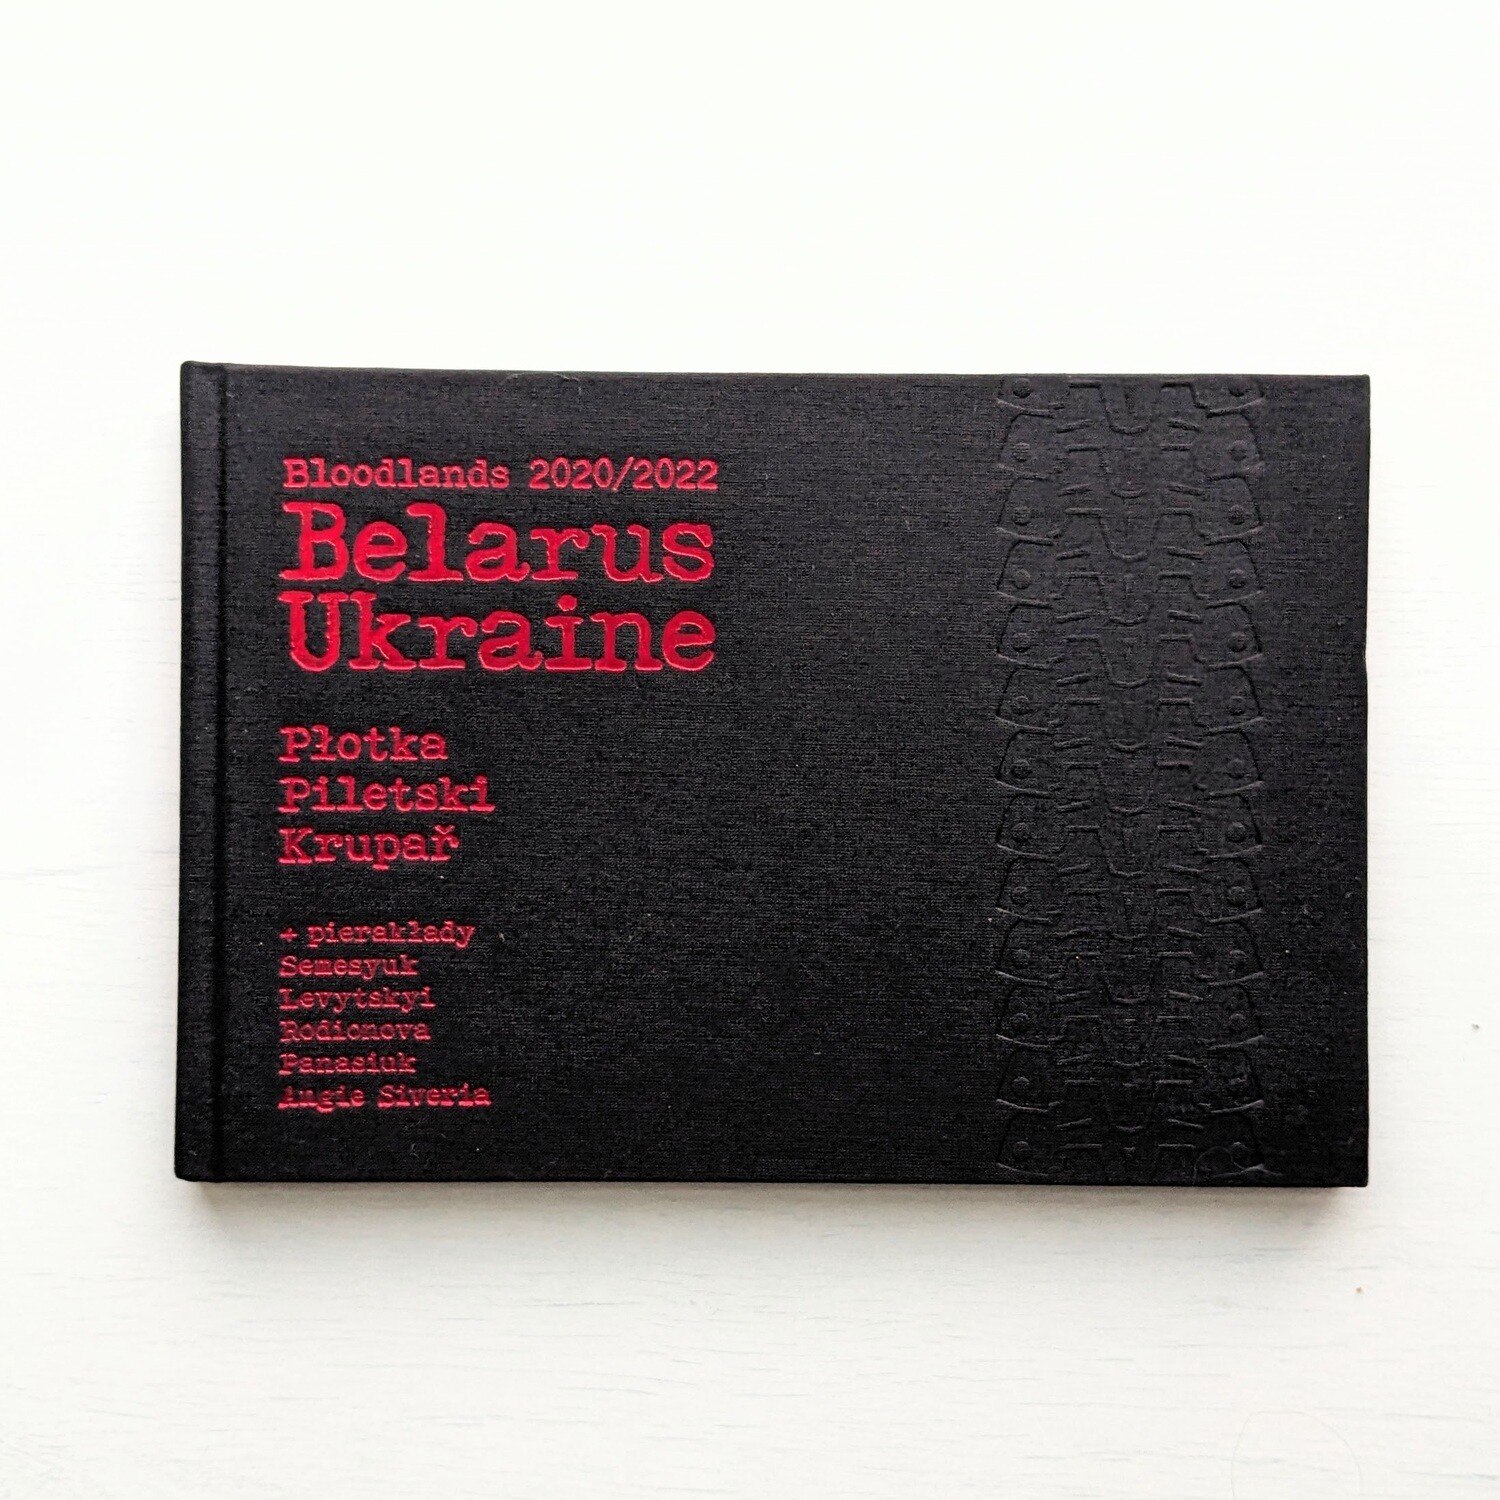 Bloodlands 2020/2022 Belarus Ukraine